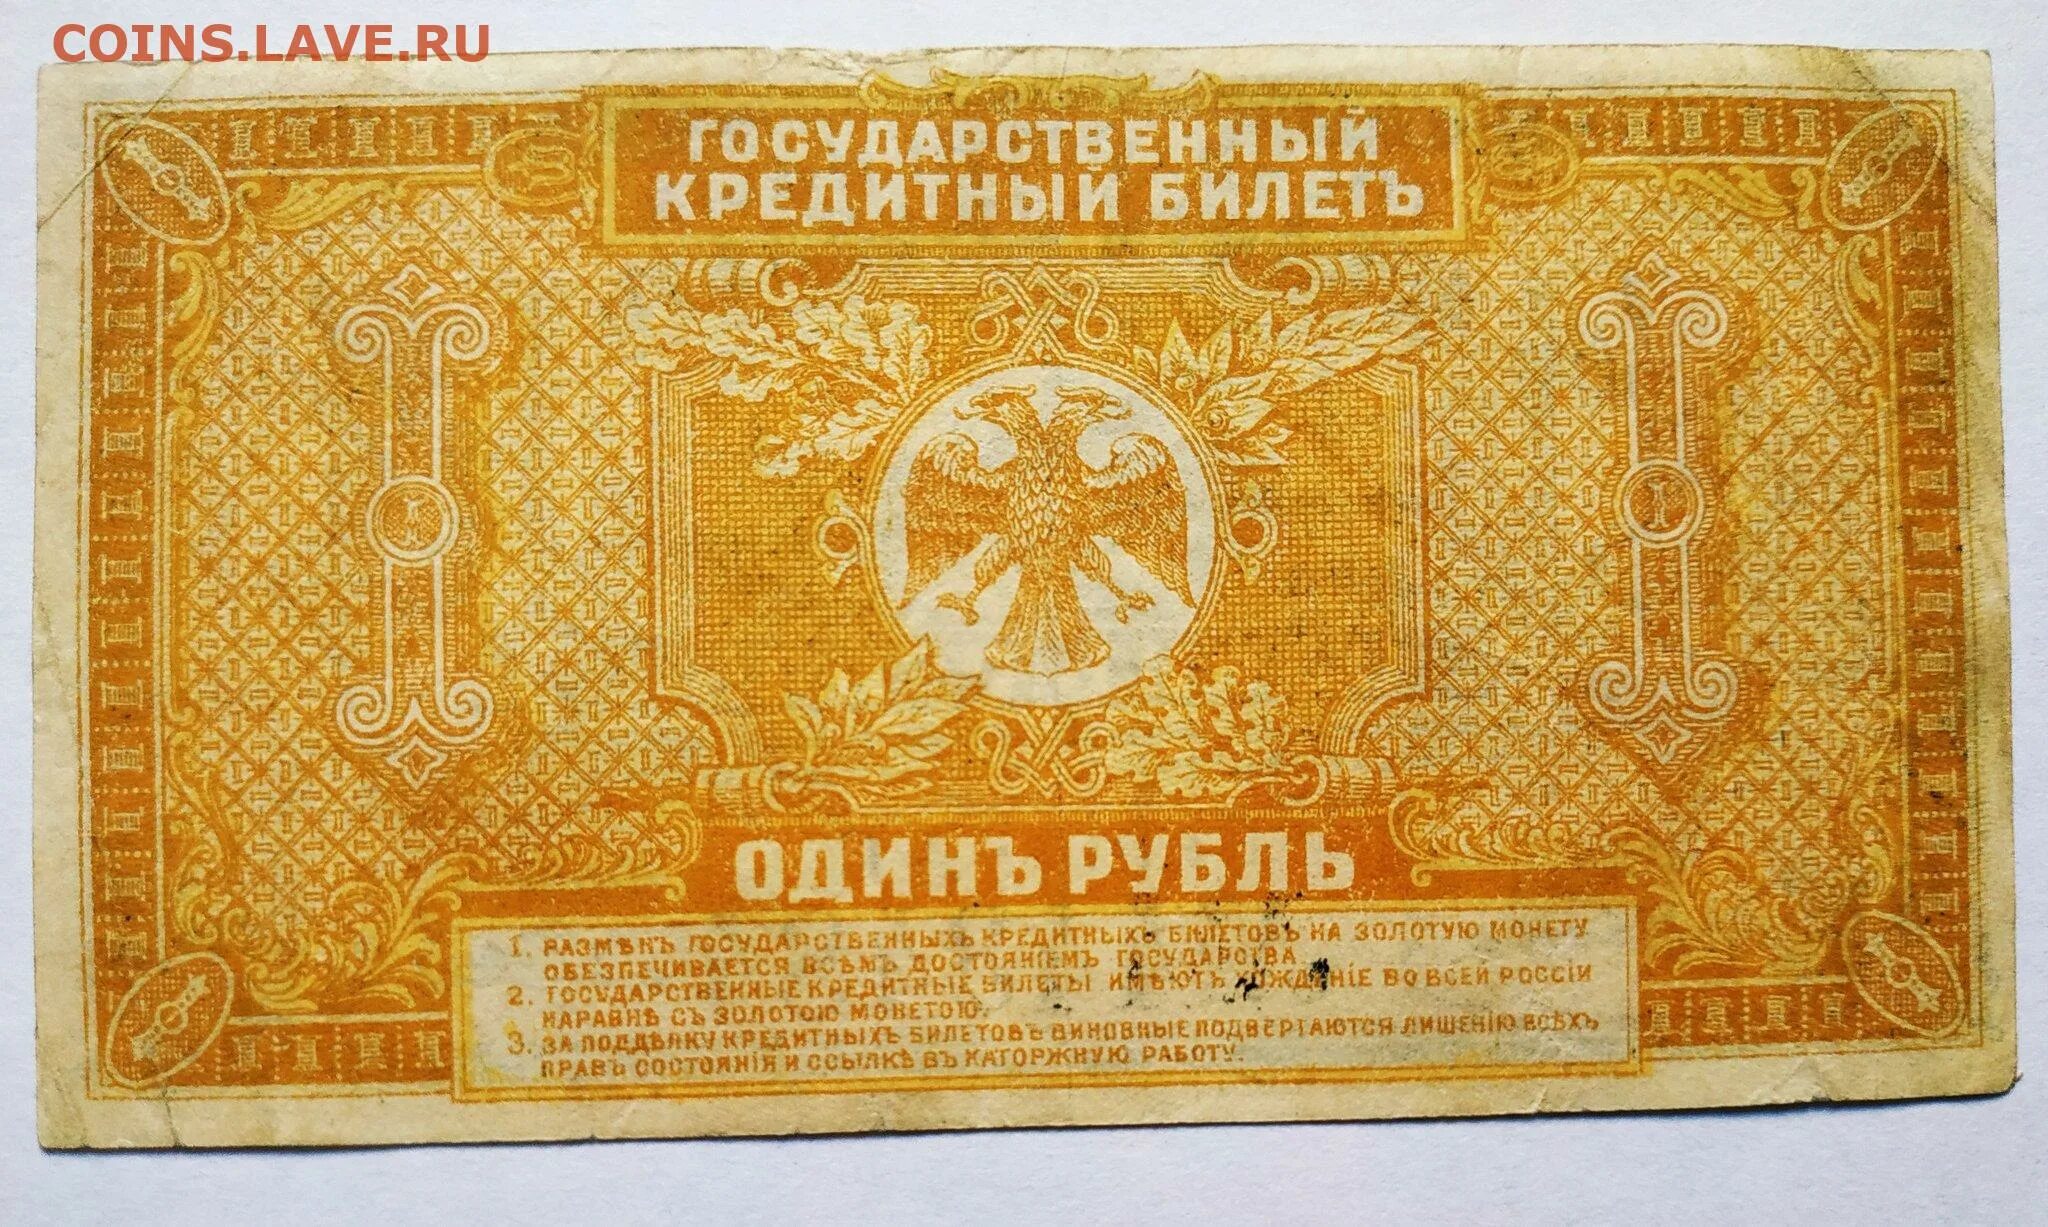 1 рубль в 80 е. 1 Рубль 1920 год Дальний Восток. Государственный кредитный билет 1 рубль 1920. Банкнота 1 рубль. Банкнота 1 рубль 1920.